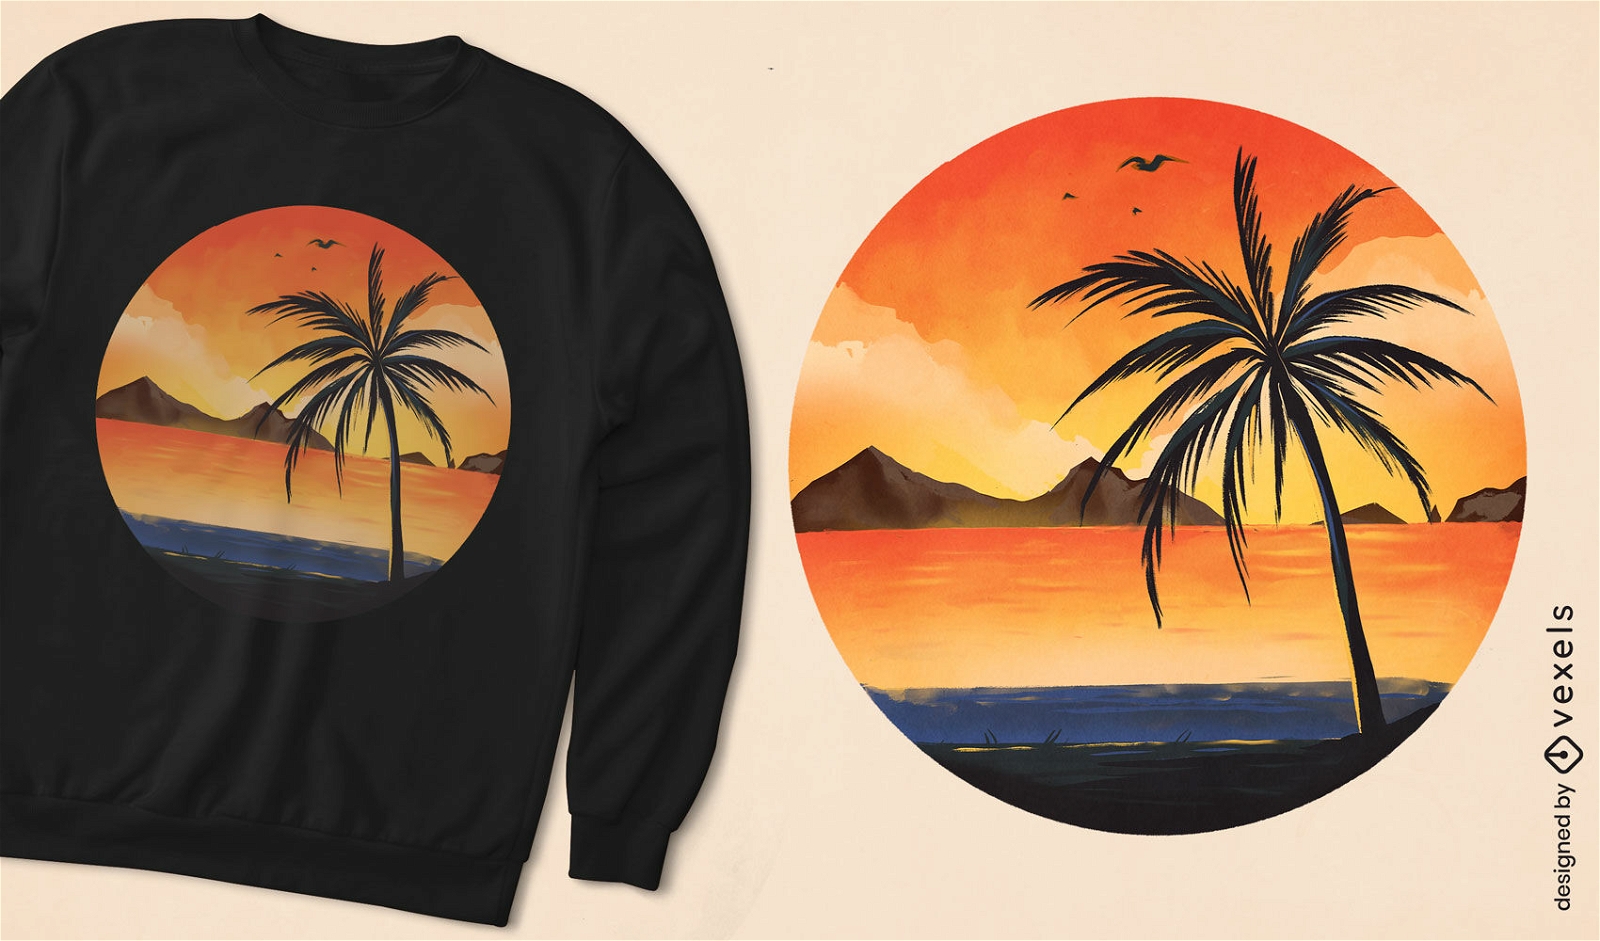 Sunset beach landscape t-shirt design